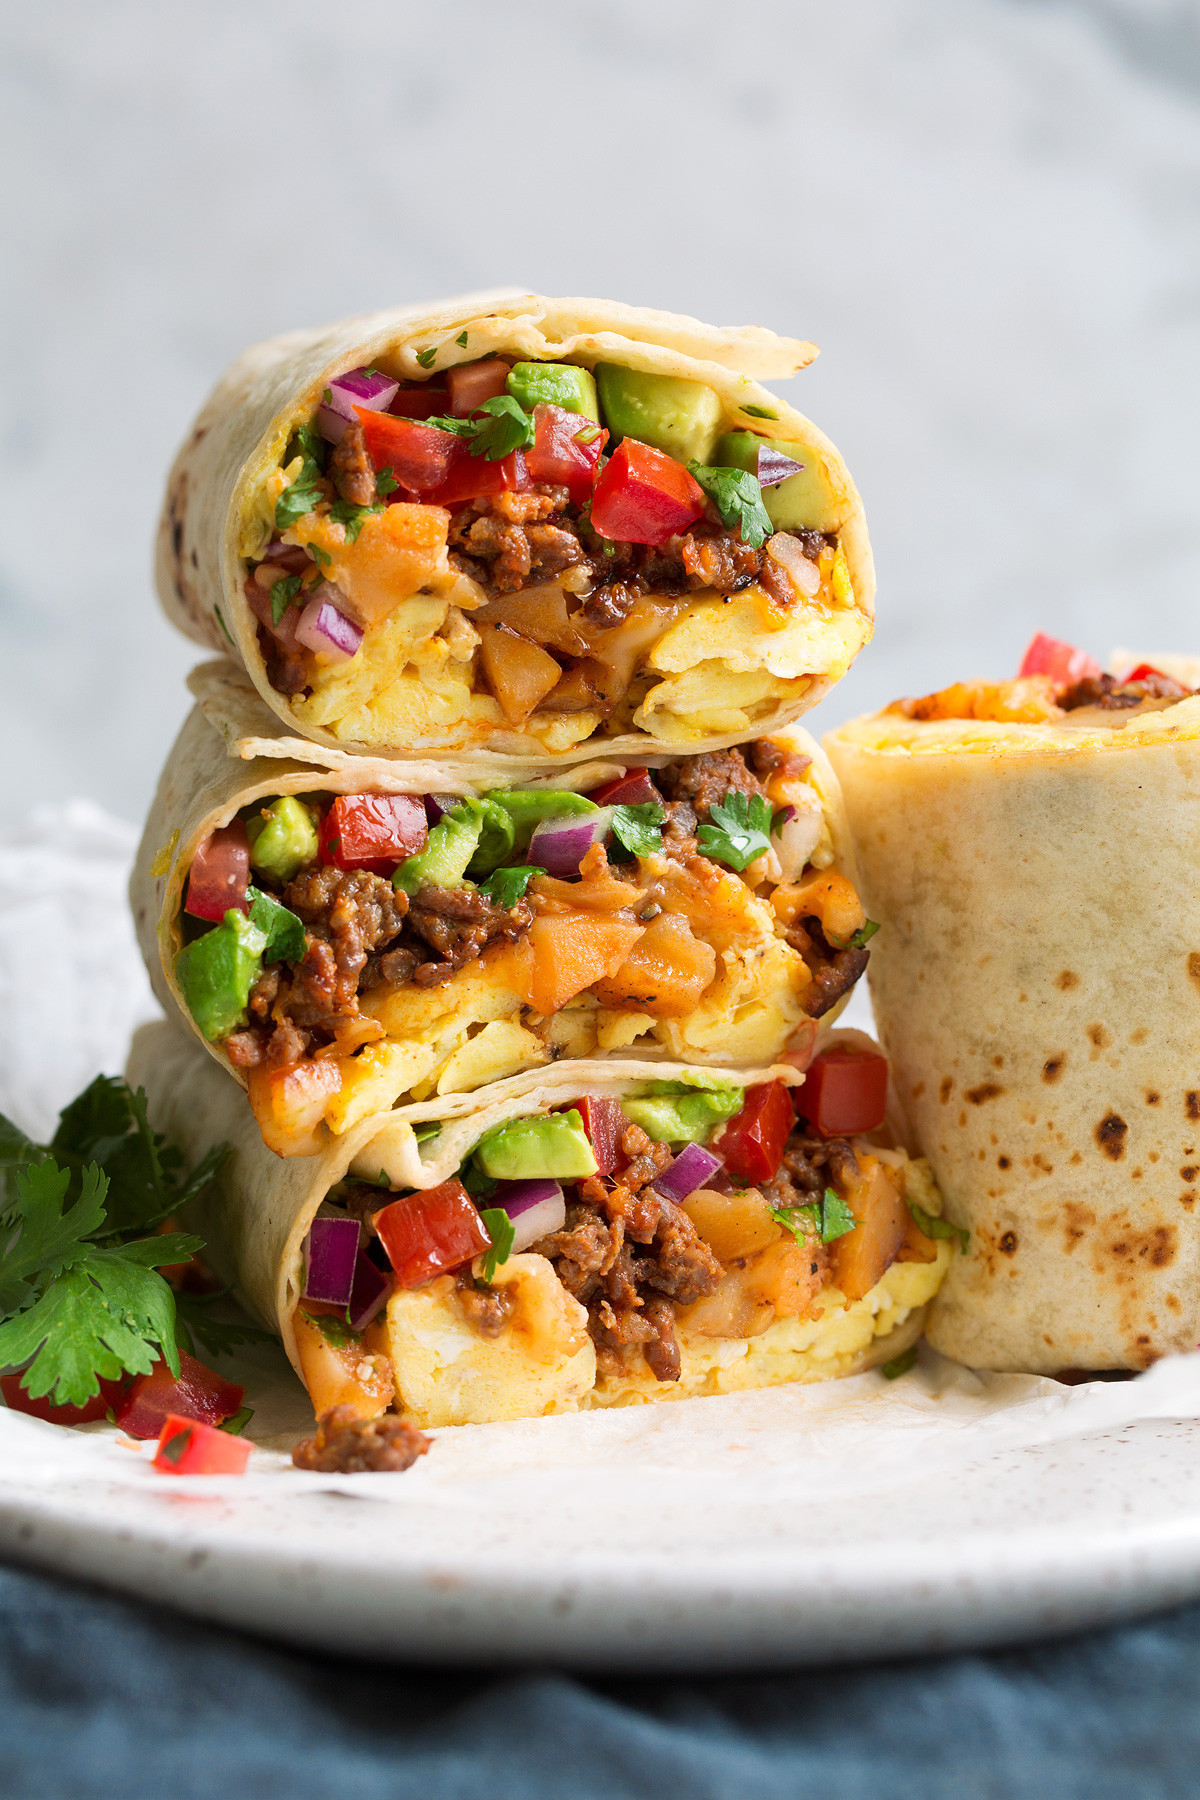 Mexican Breakfast Burrito Recipes Inspirational Authentic Mexican Breakfast Burrito Recipe